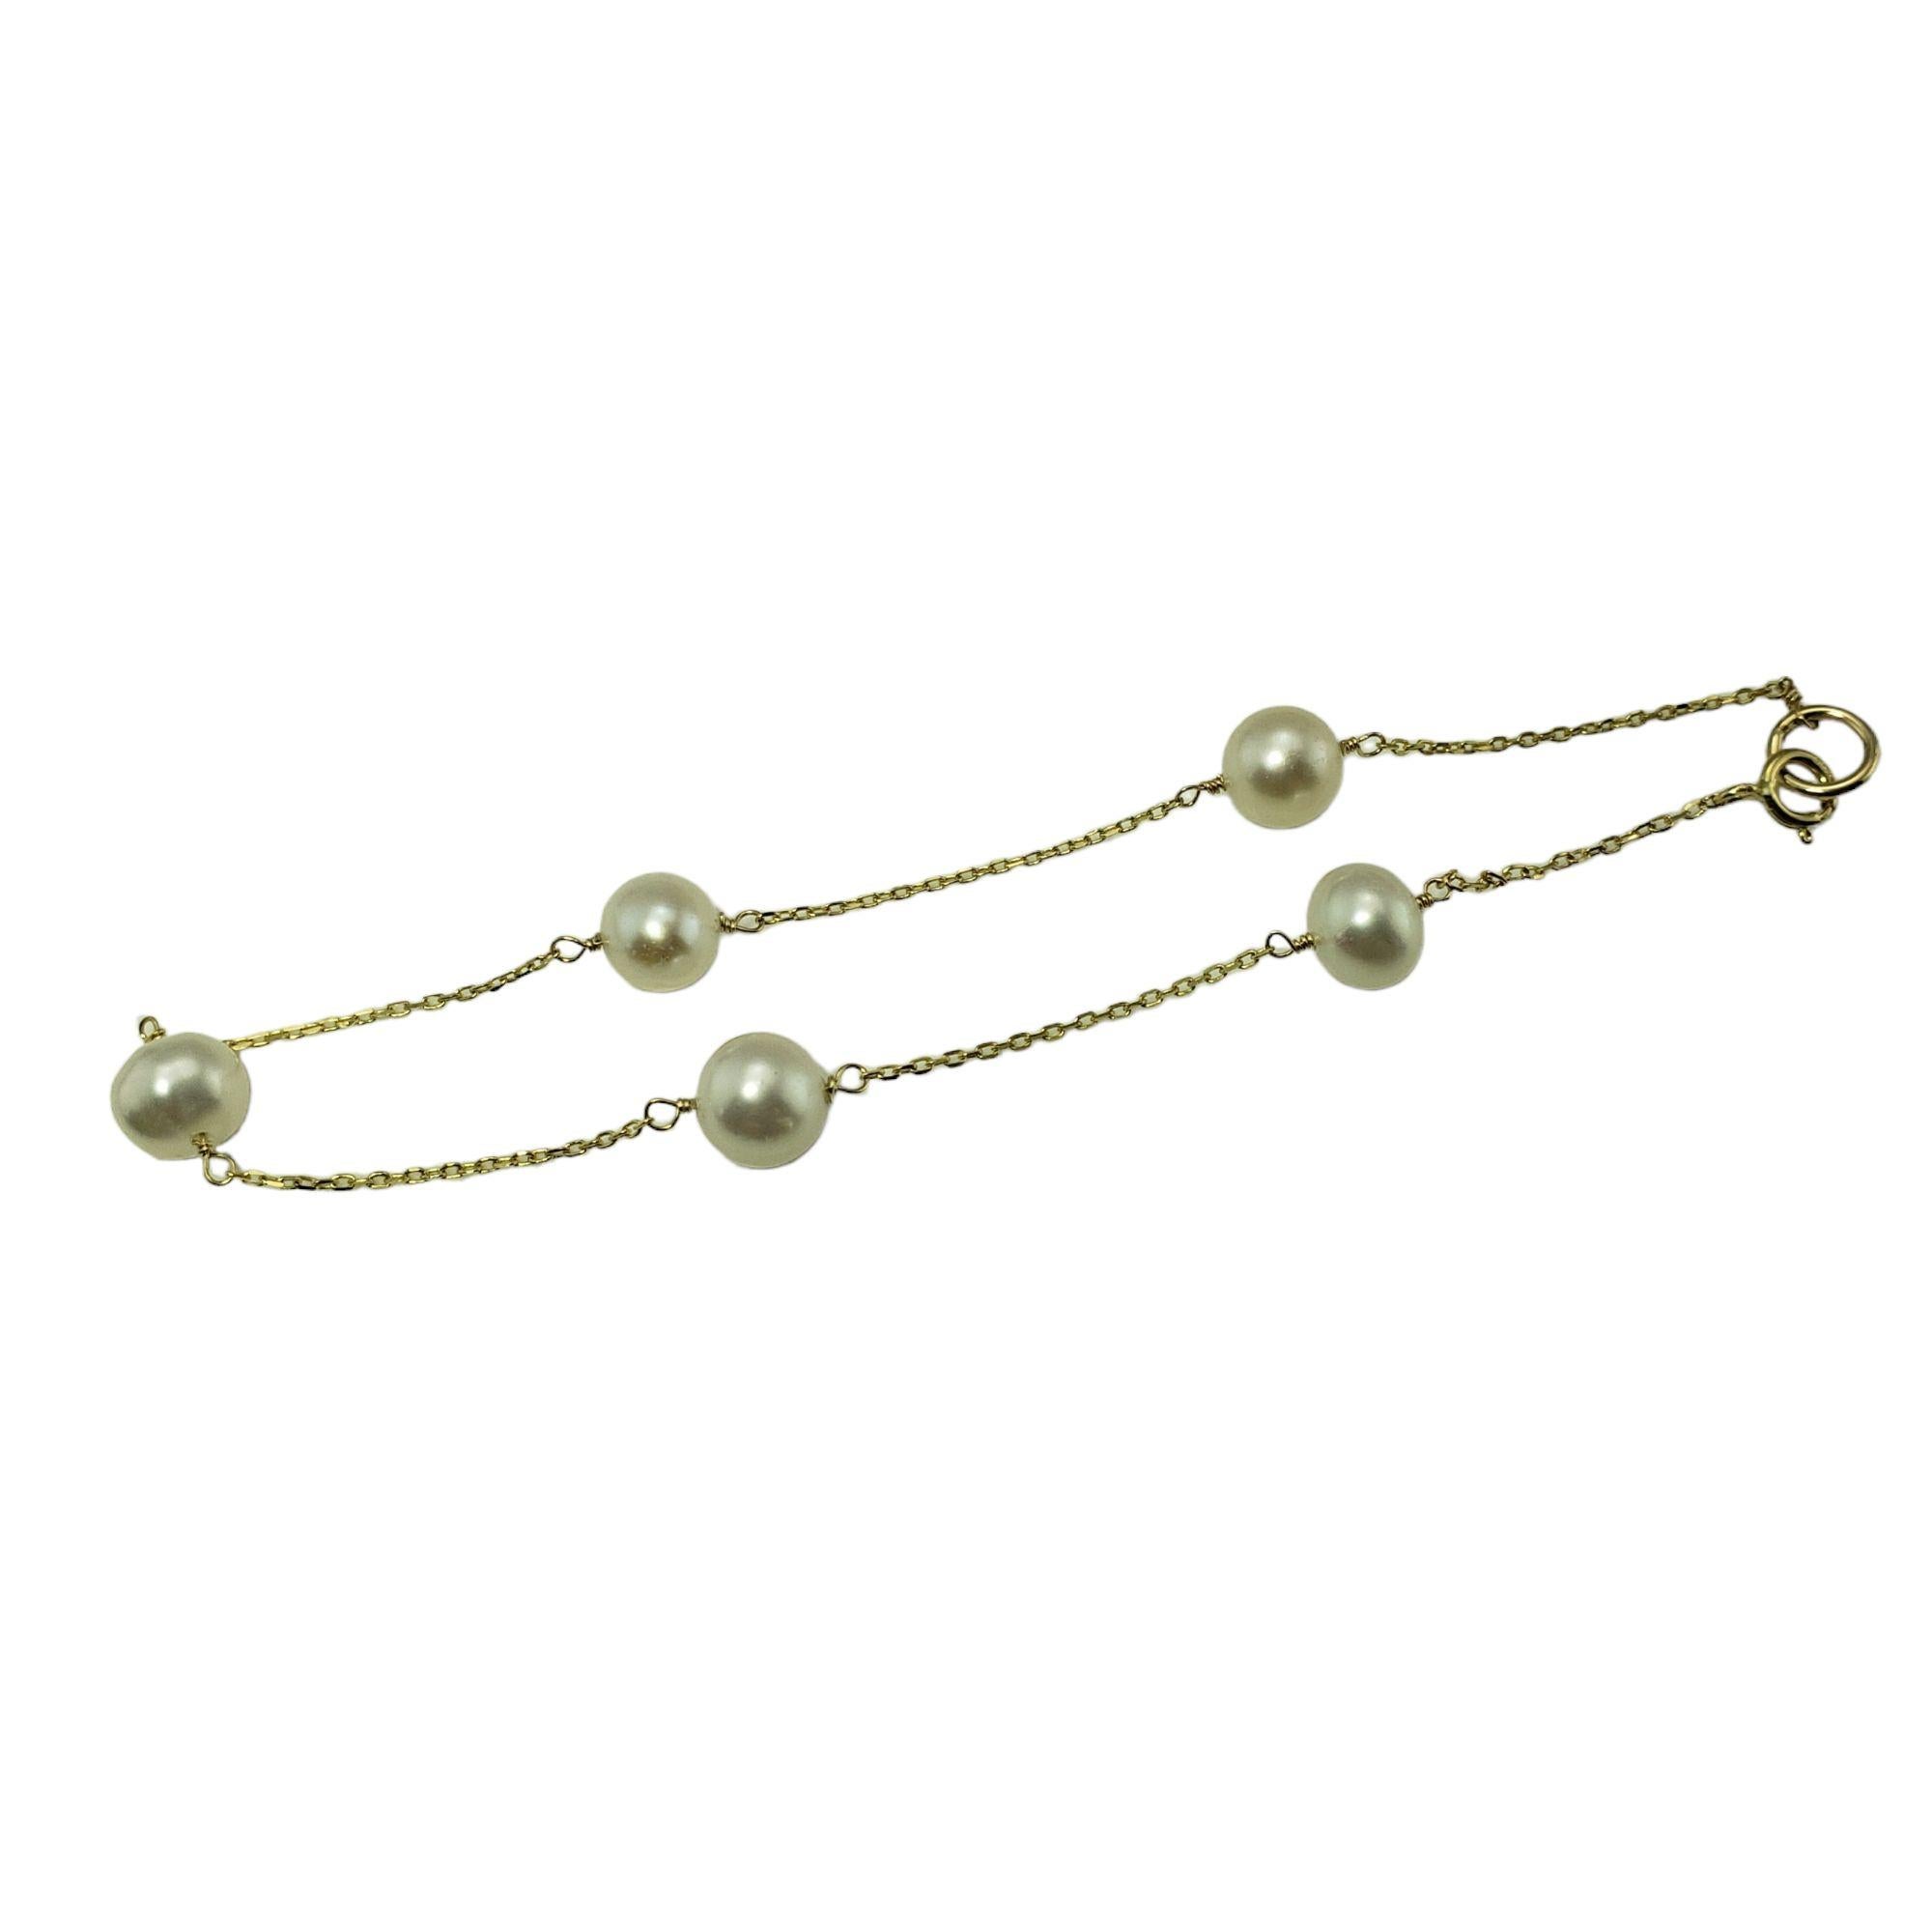 Bracelet vintage en or jaune 14 carats et perles-

Ce charmant bracelet station présente sept perles blanches de 6 mm serties sur une chaîne en câble classique.

Taille : 7 pouces

Poids :  1.3 dwt. /  2,1 gr.

Estampillé : 585

Très bon état,